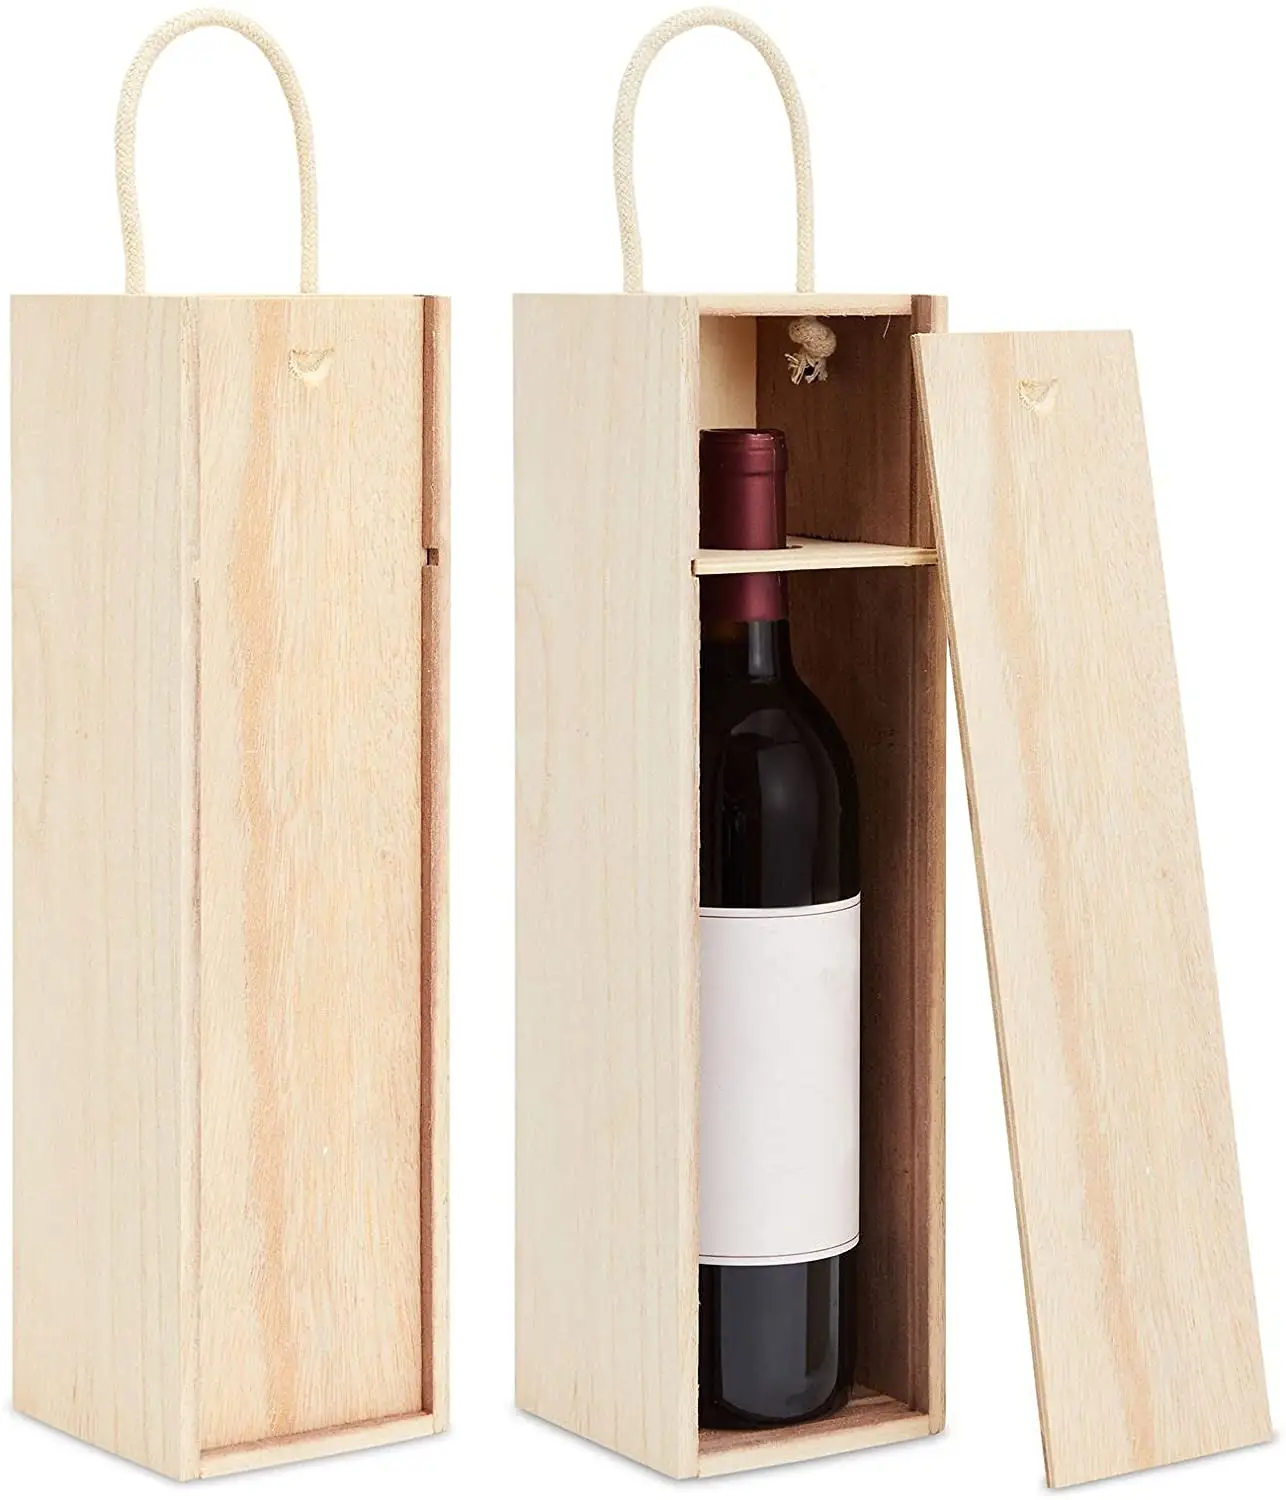 ขายส่งสำหรับกล่องไวน์ไม้ที่กำหนดเอง-กล่องไม้ที่เป็นมิตรกับสิ่งแวดล้อมคุณภาพสูงสำหรับไวน์หรูหราชาและเครื่องดื่มอื่น